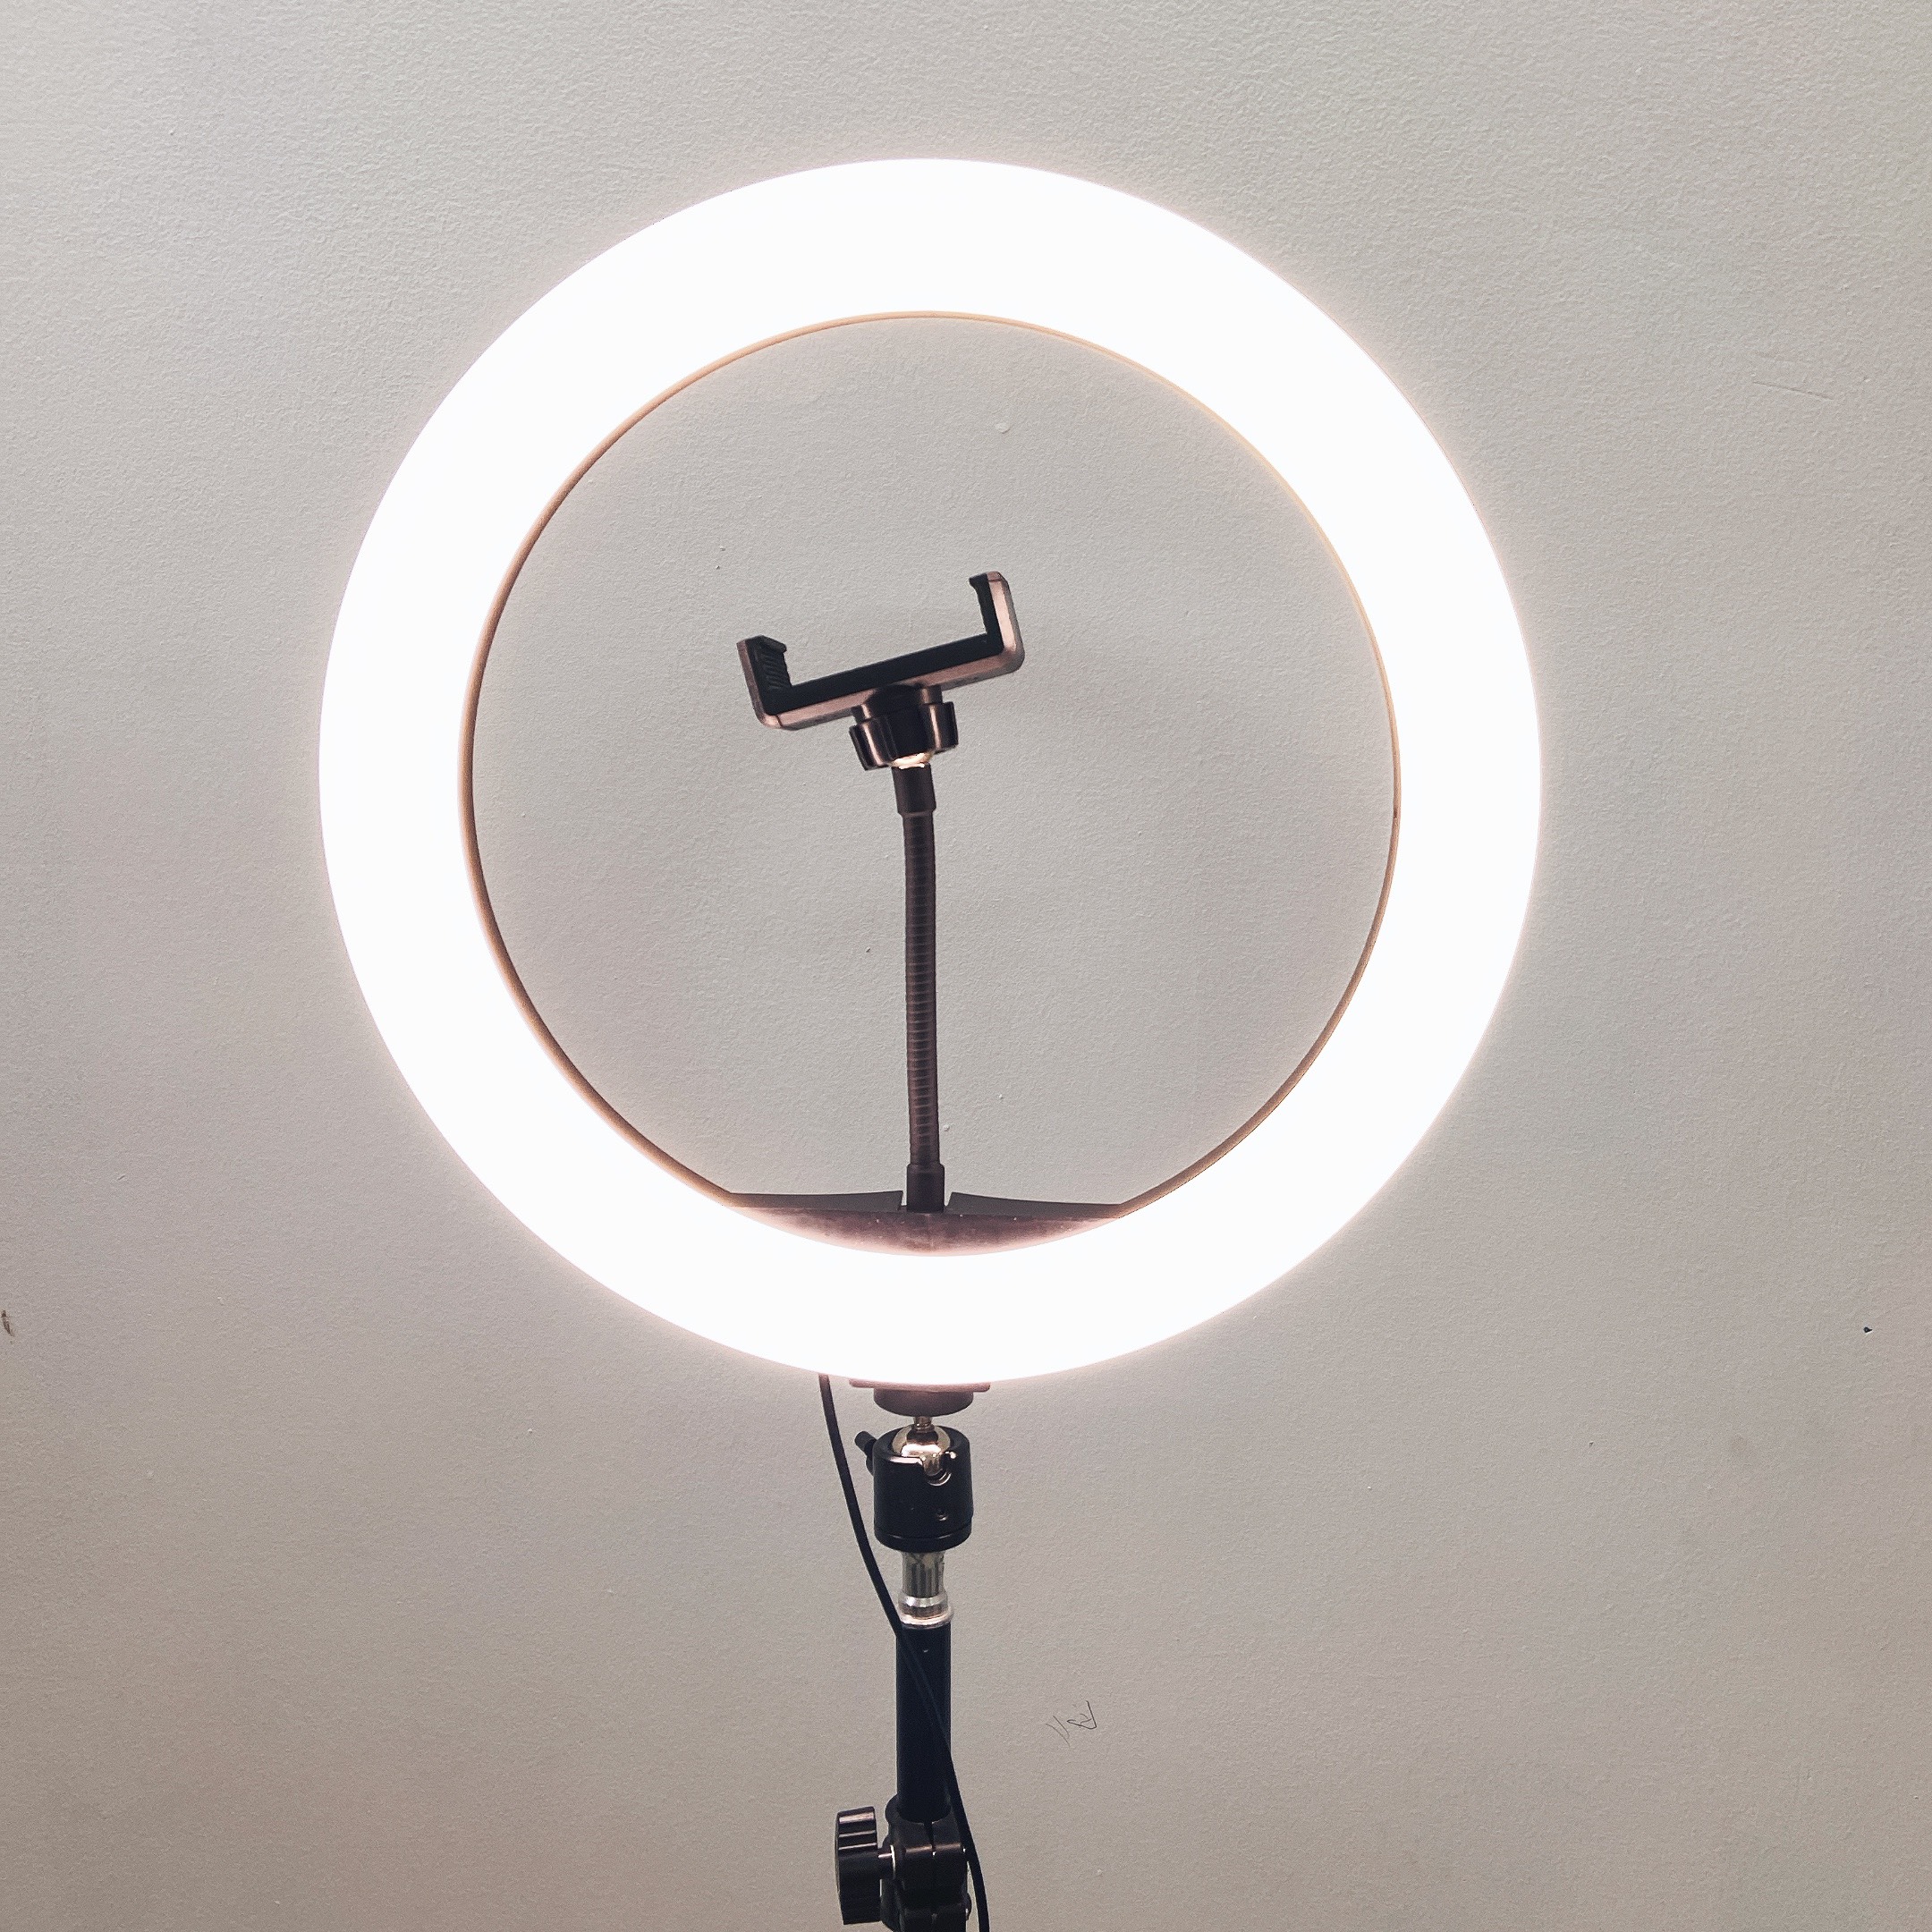 Đèn Livestream size 26 36 45 cm và chân đế 2m hỗ trợ chụp ảnh Make up trang điểm nhiều chế độ sáng, kèm kẹp điện thoại - Hàng chính hãng